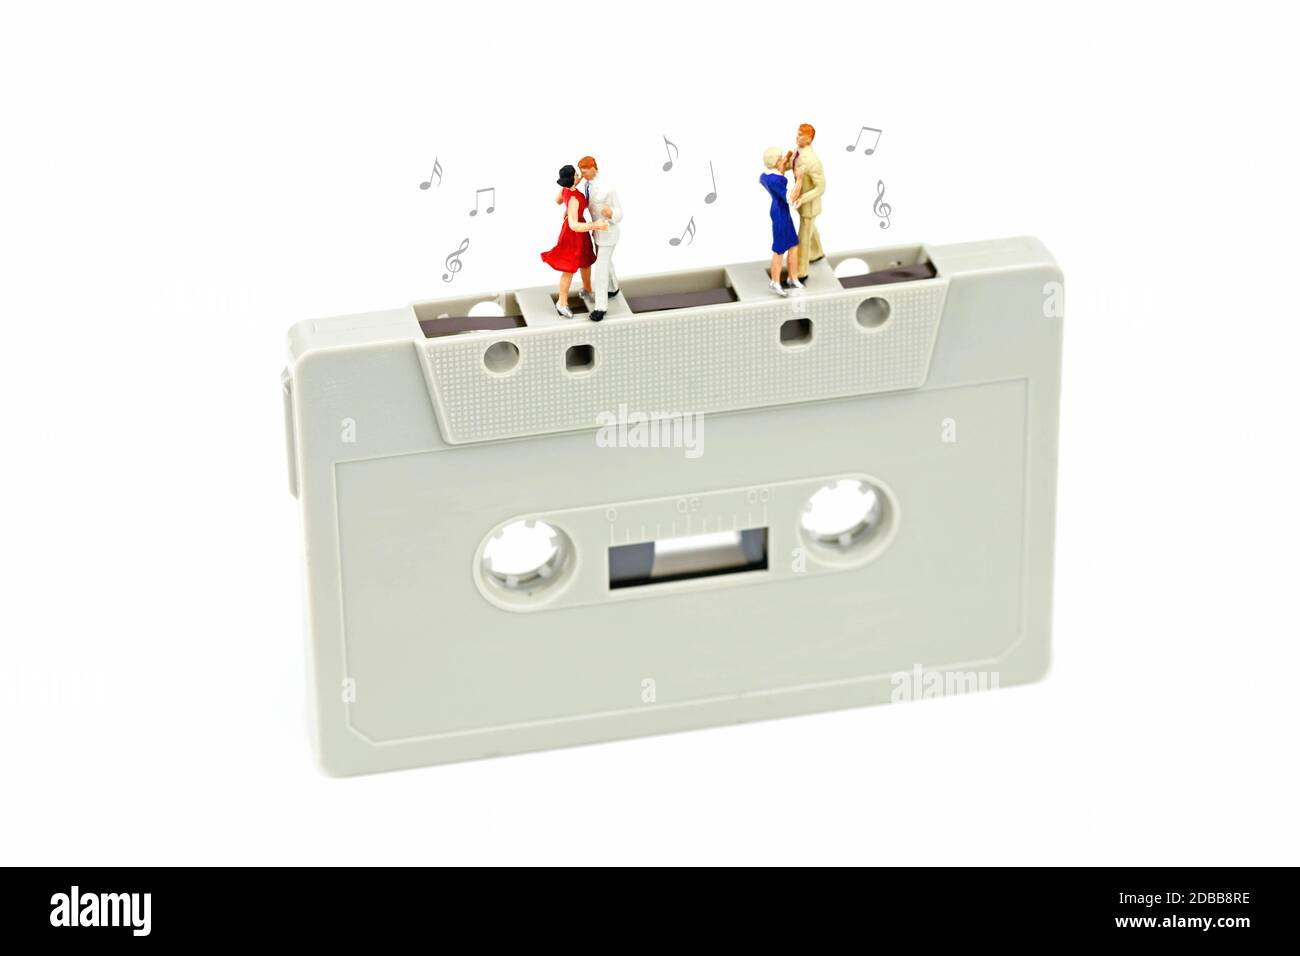 Des couples miniatures dansent sur un Music-cassette Banque D'Images